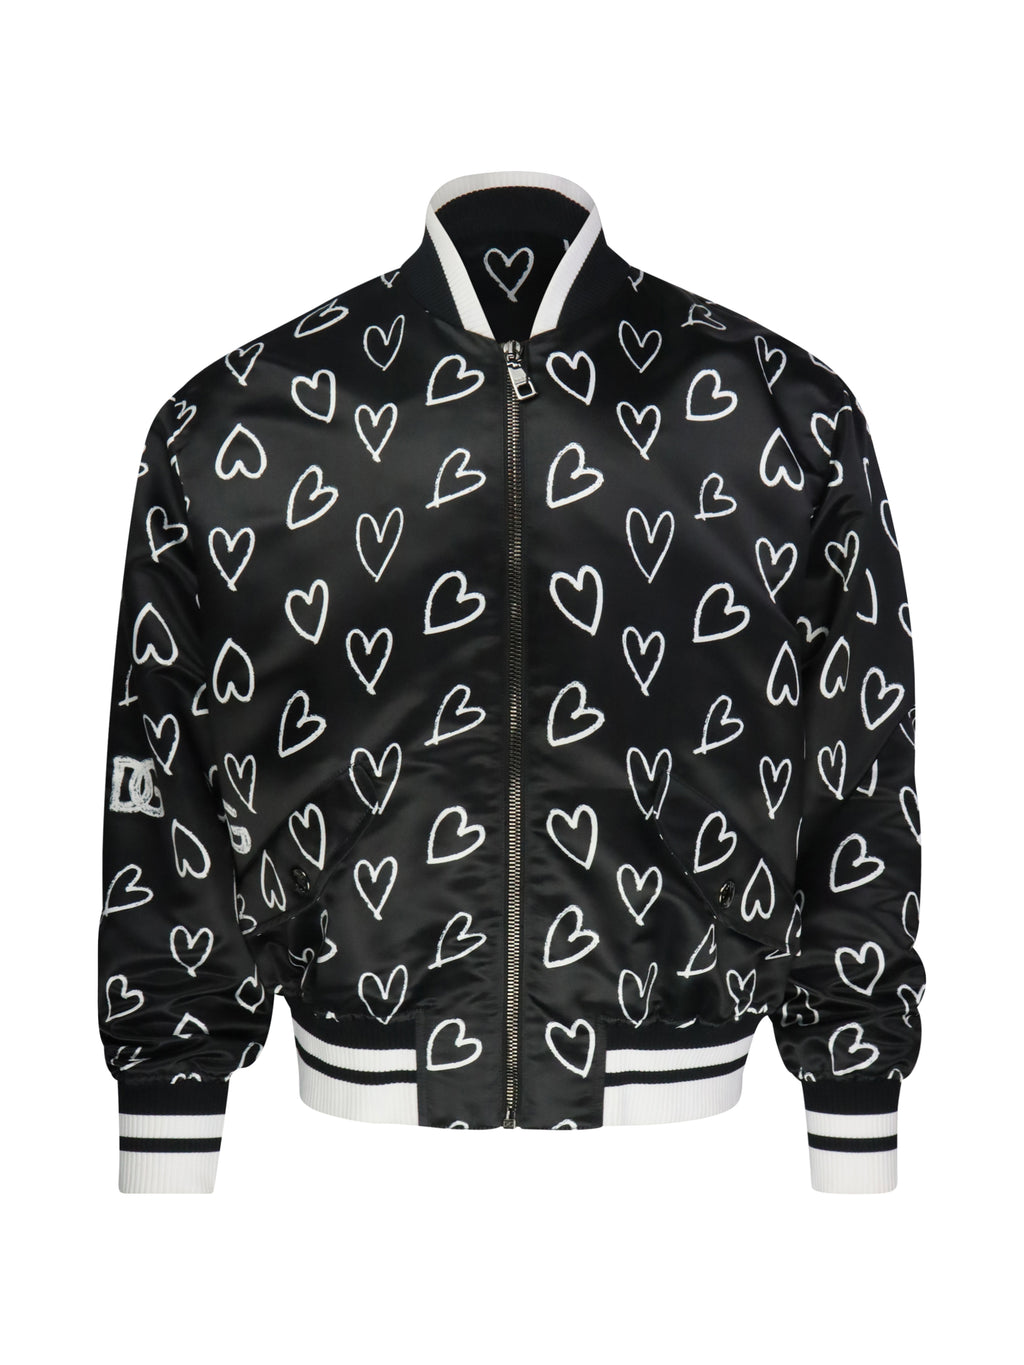 Dolce & Gabbana jacket